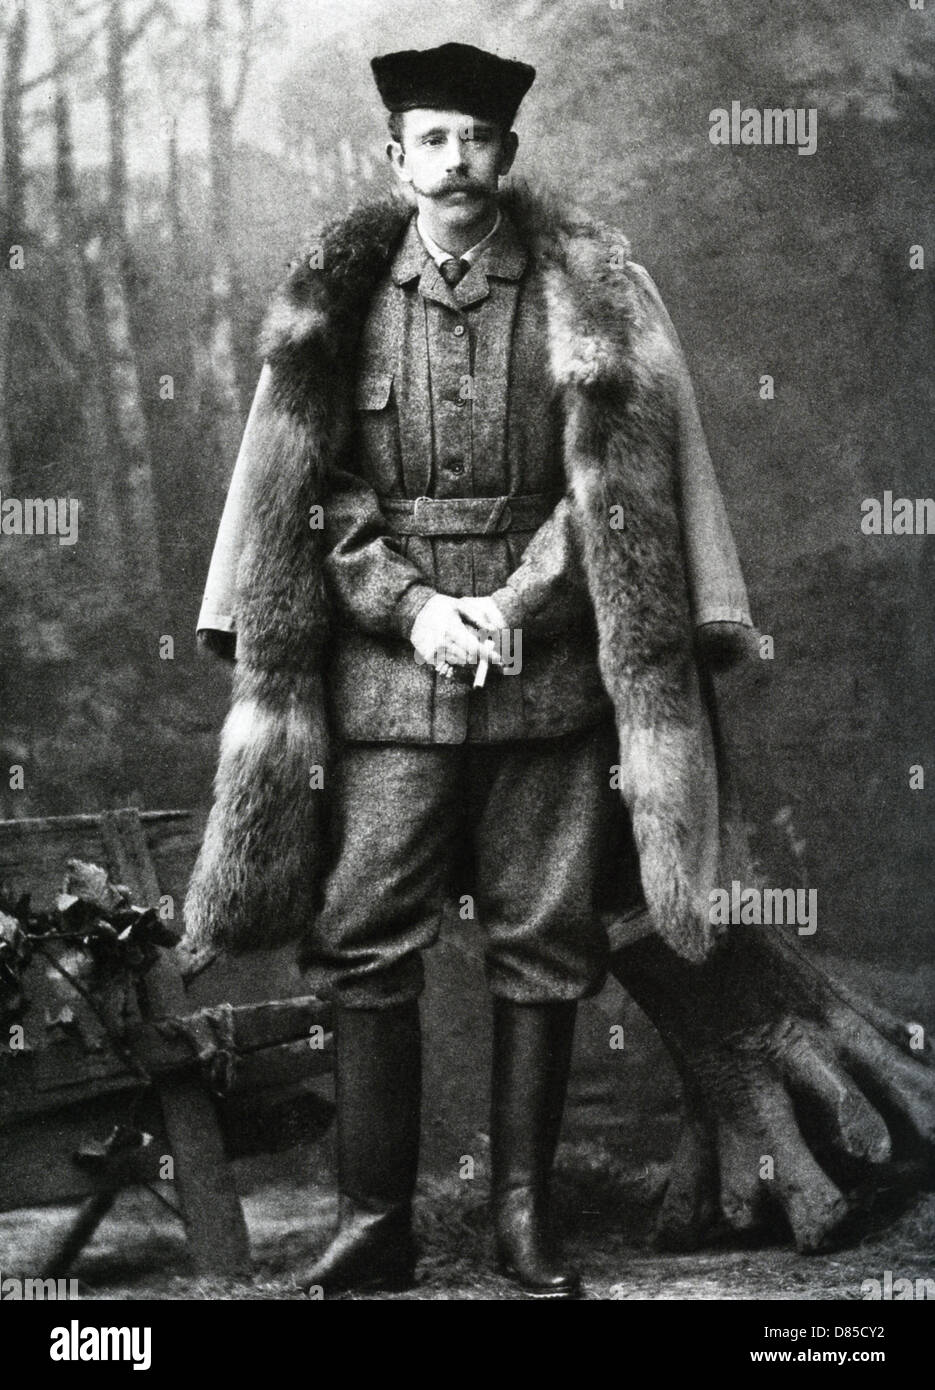 RUDOLF, Prince héritier d'Autriche (1858-1889) photographié vers 1887. Il s'est suicidé. Banque D'Images